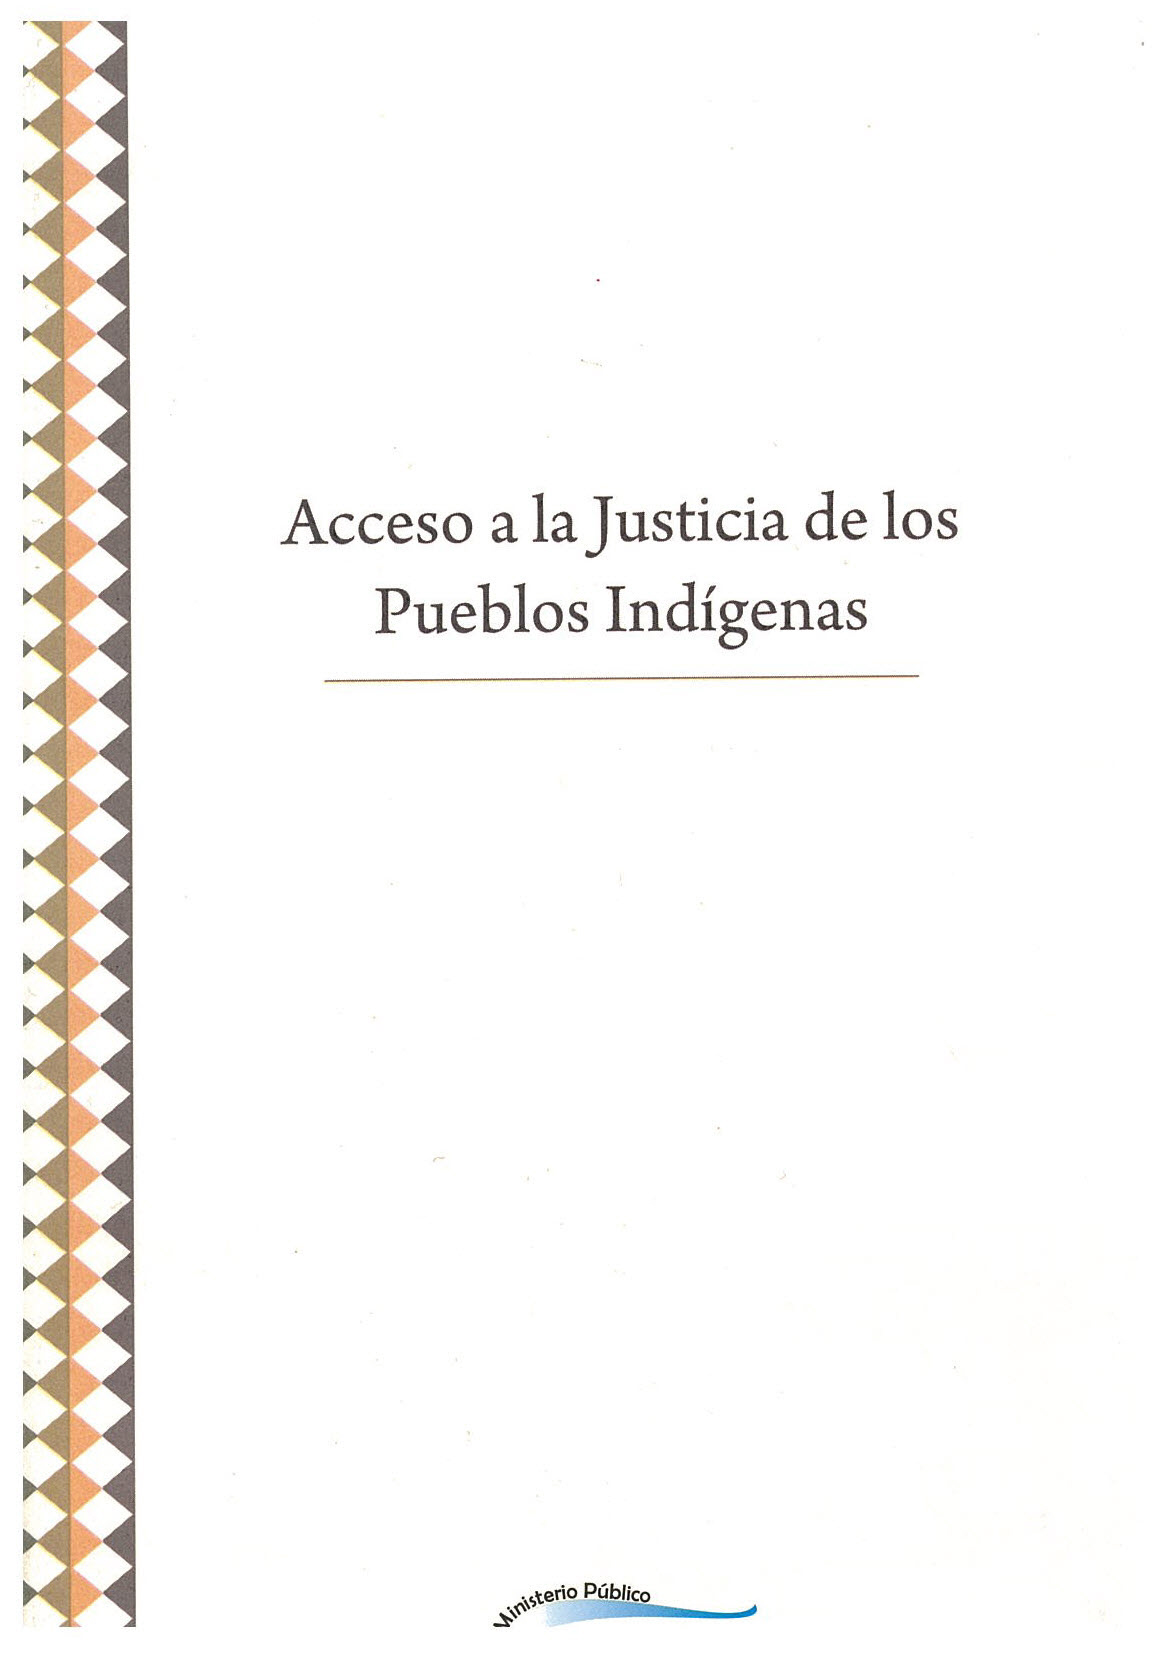 Acceso a la justicia de los pueblos indígenas